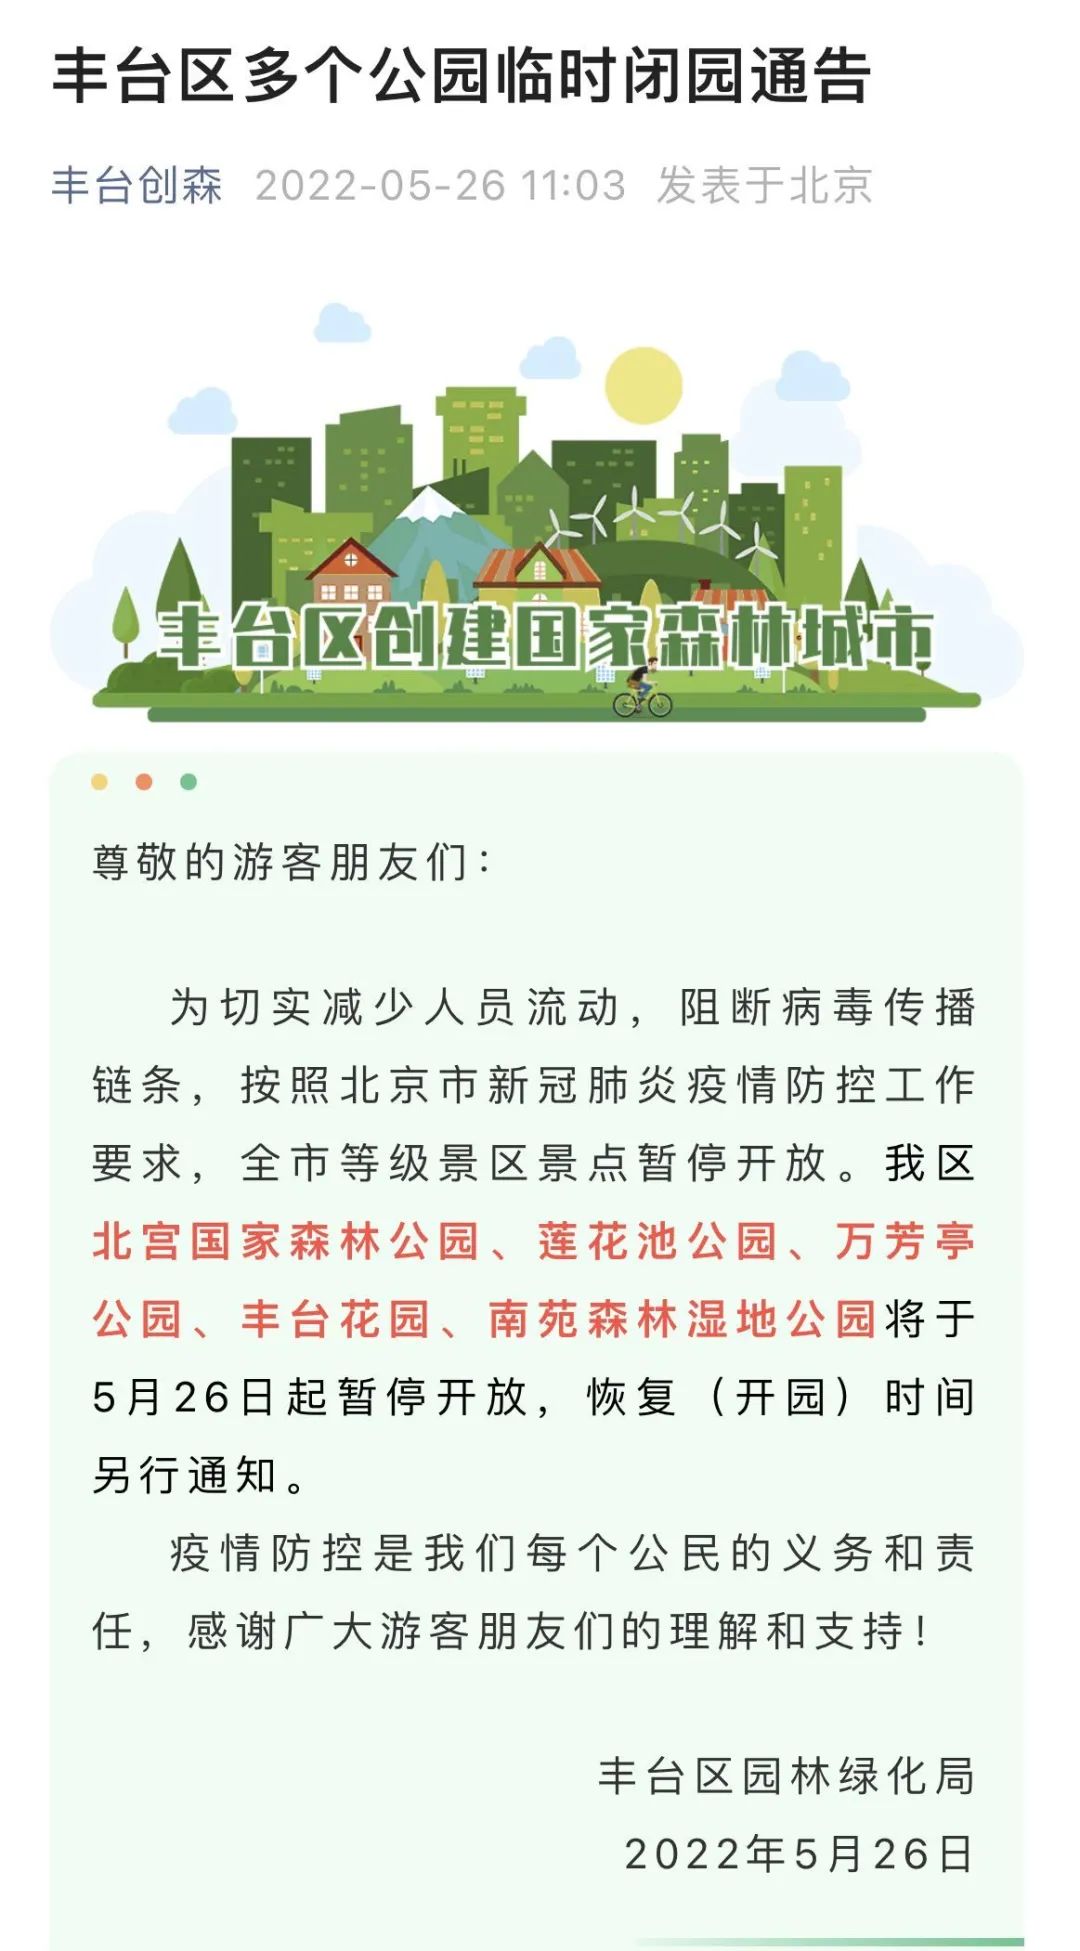 北京丰台区多个公园临时闭园，两区更新风险点位